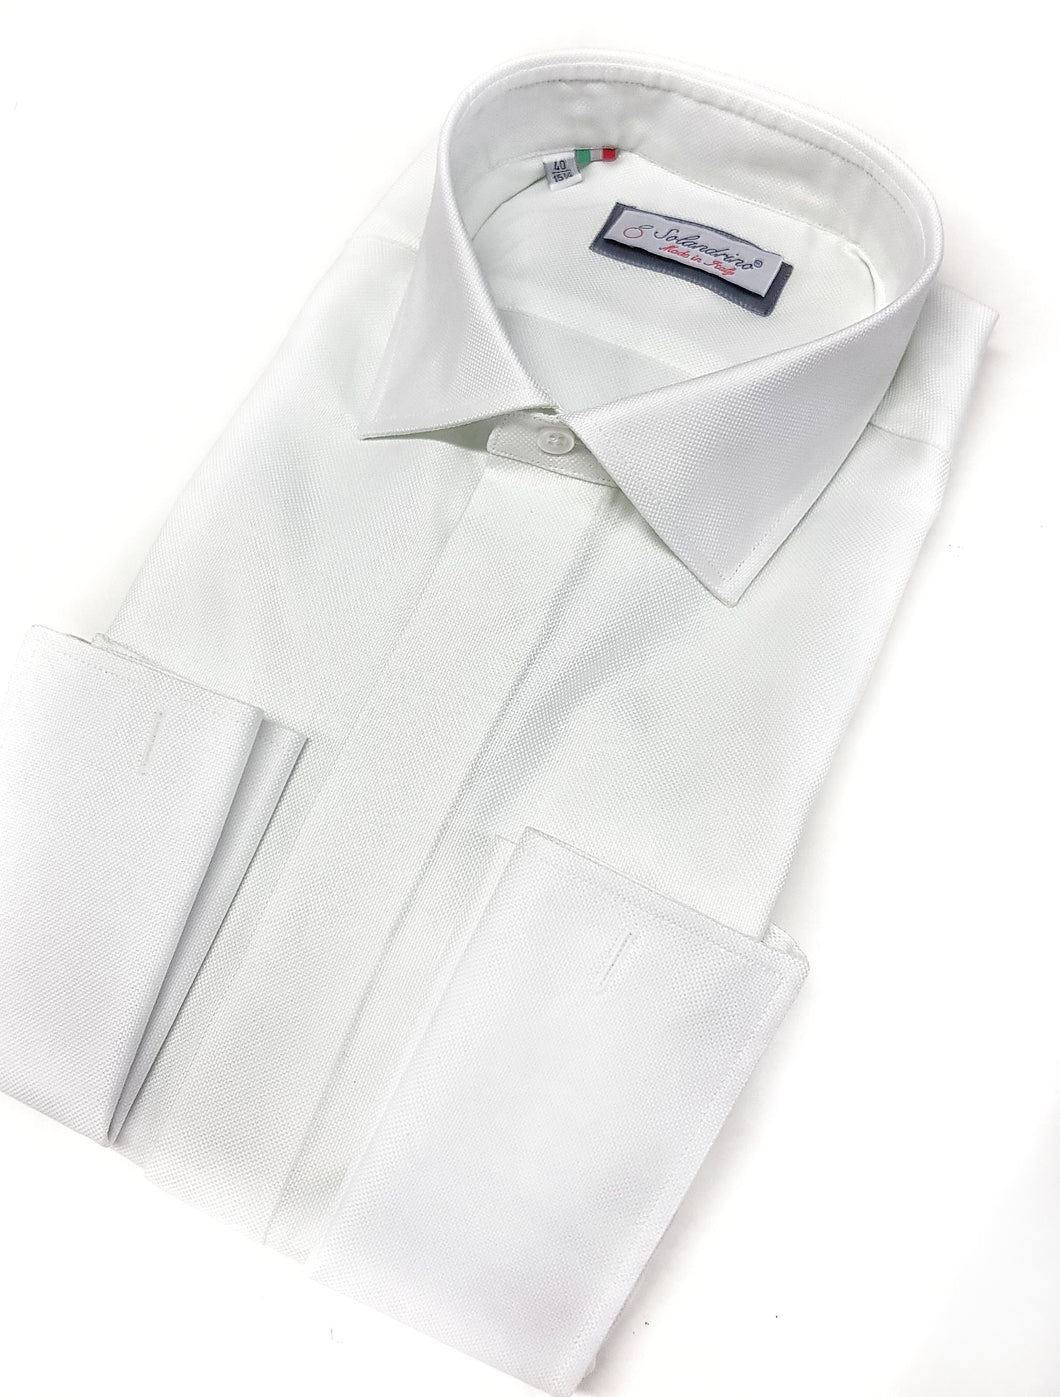 Camicia bianca elegante Oxford armaturato alta qualità polsini gemelli puro cotone made in italy white shirt Oxford double cuffllink